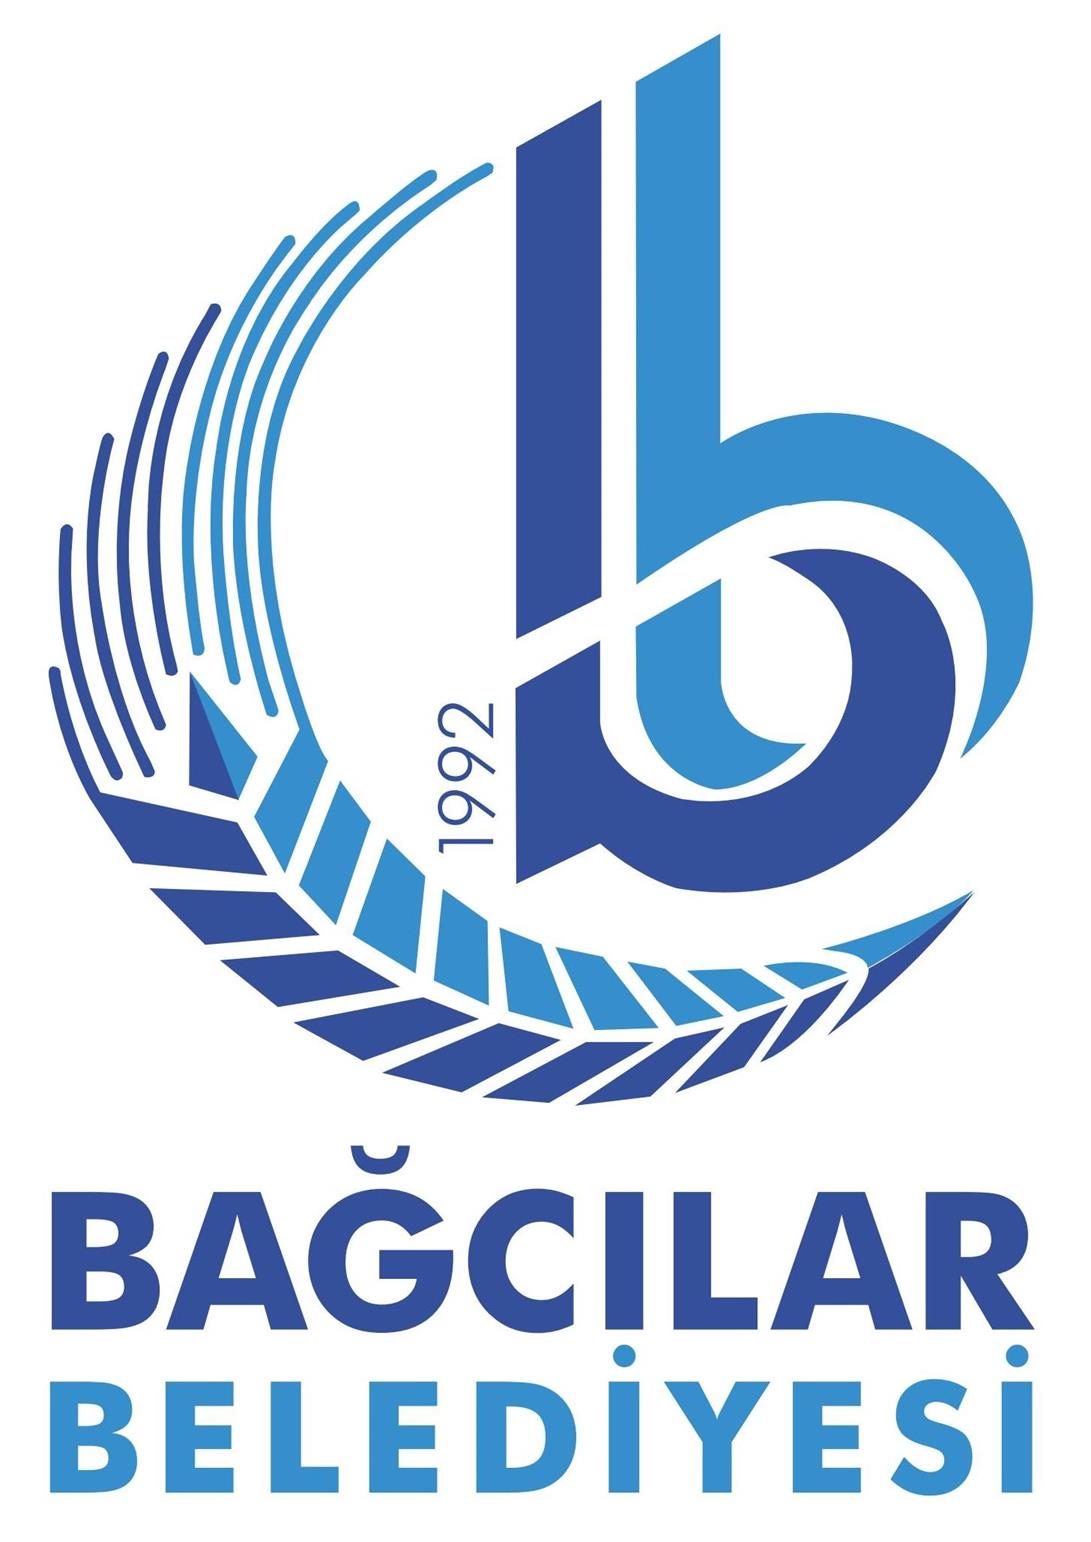 bagcilar belediyesi logo